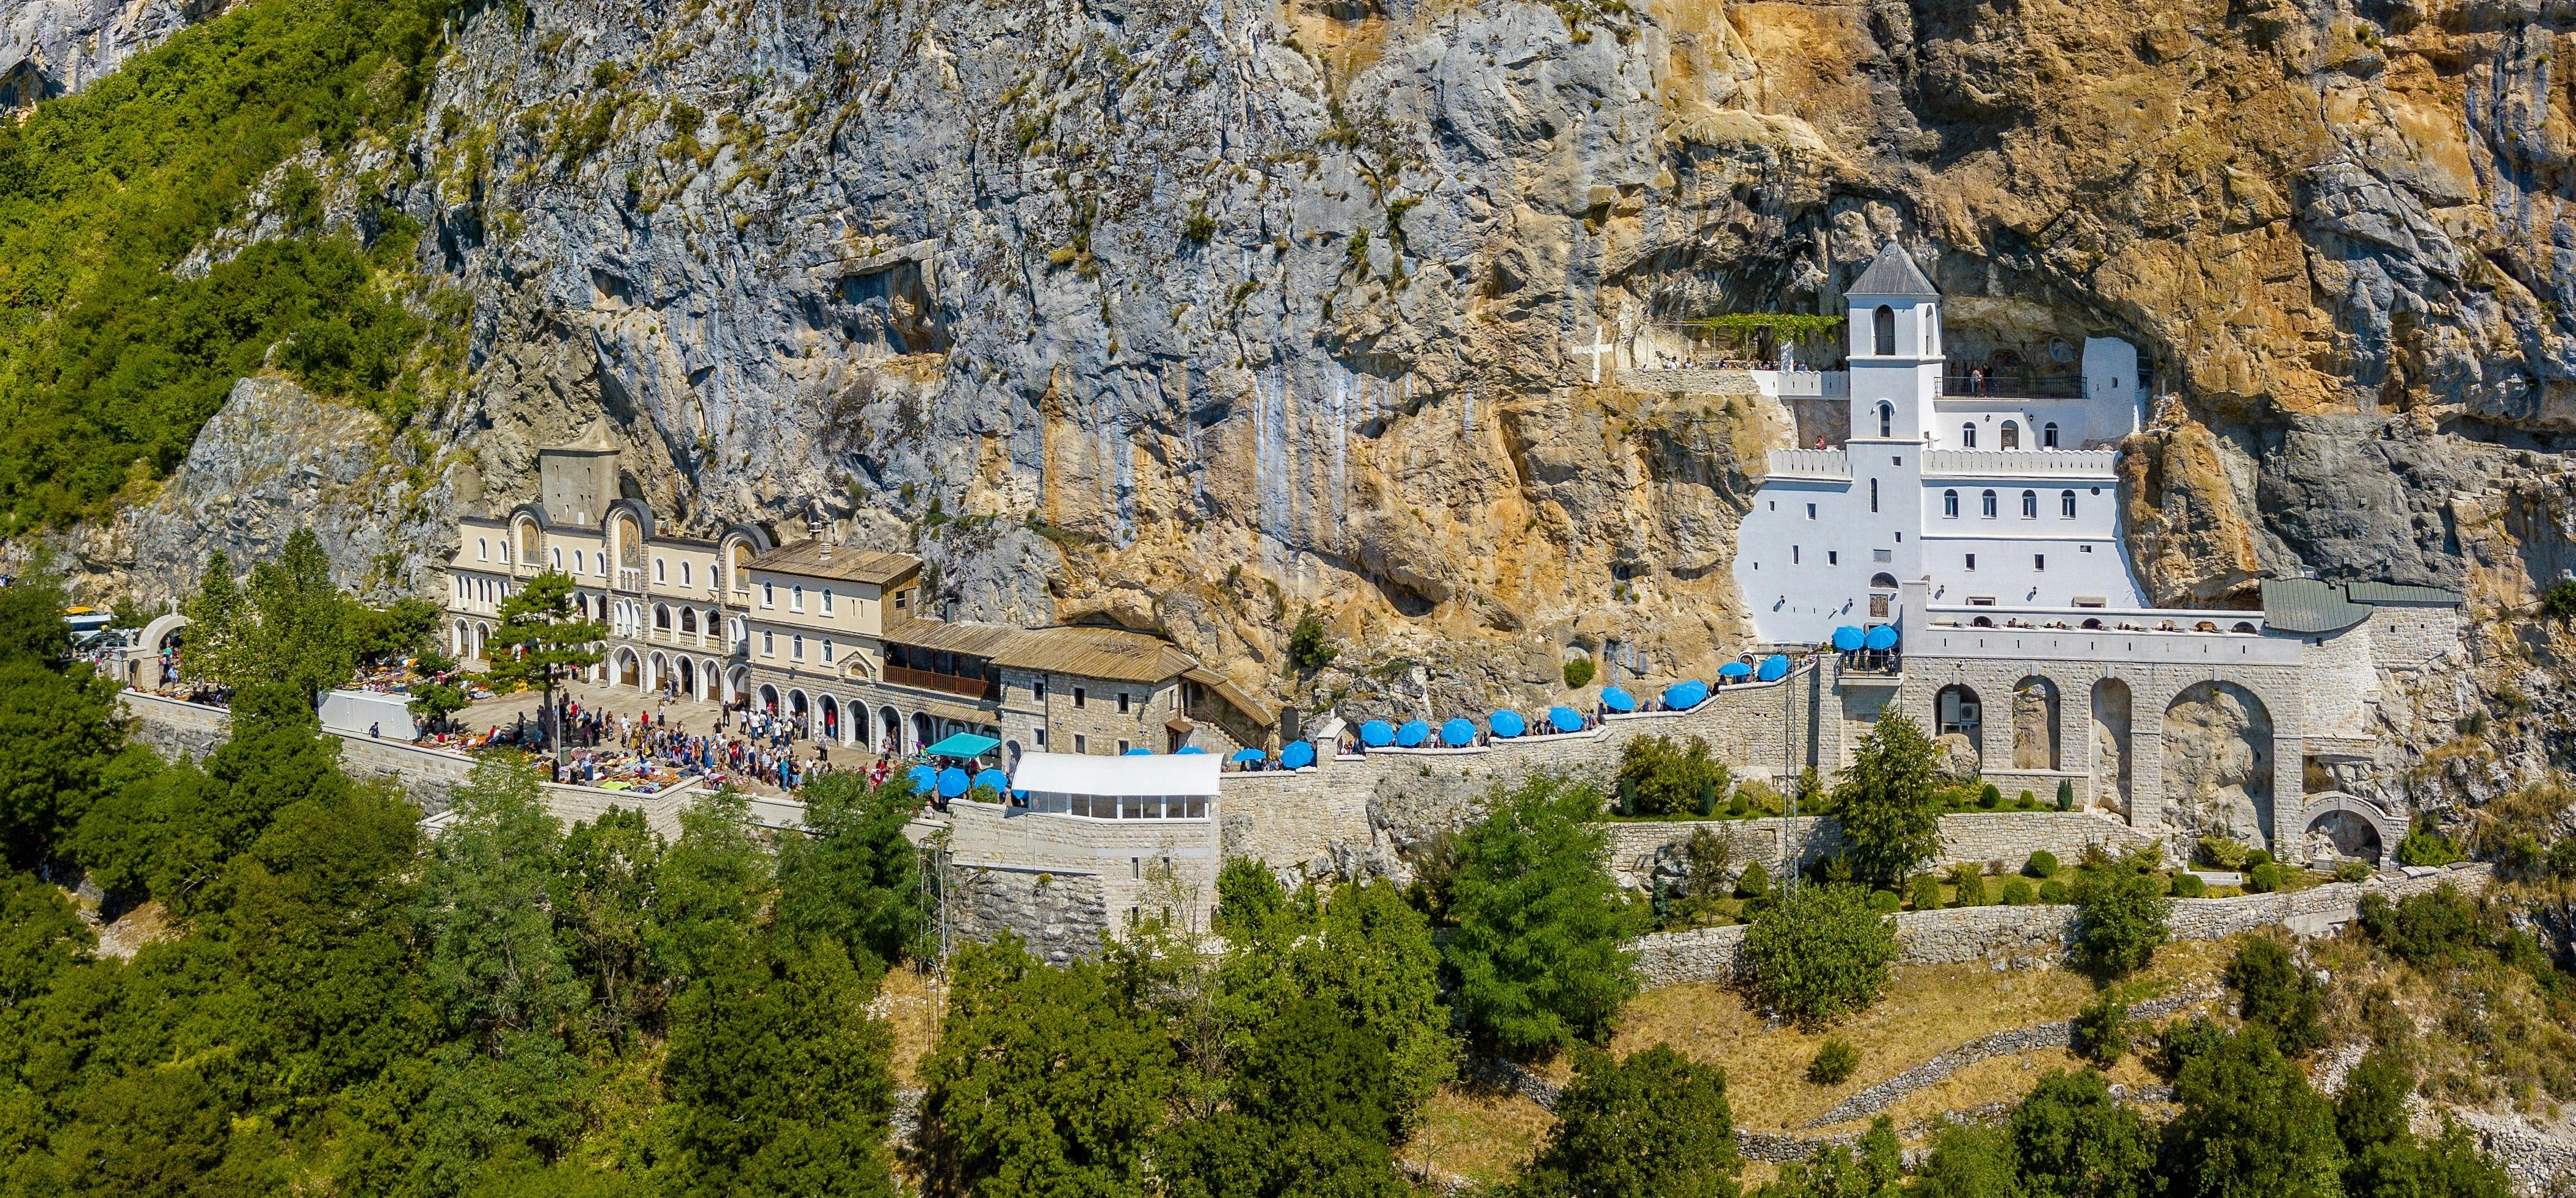 Gita giornaliera privata al monastero di Ostrog con trasporto da Herceg Novi